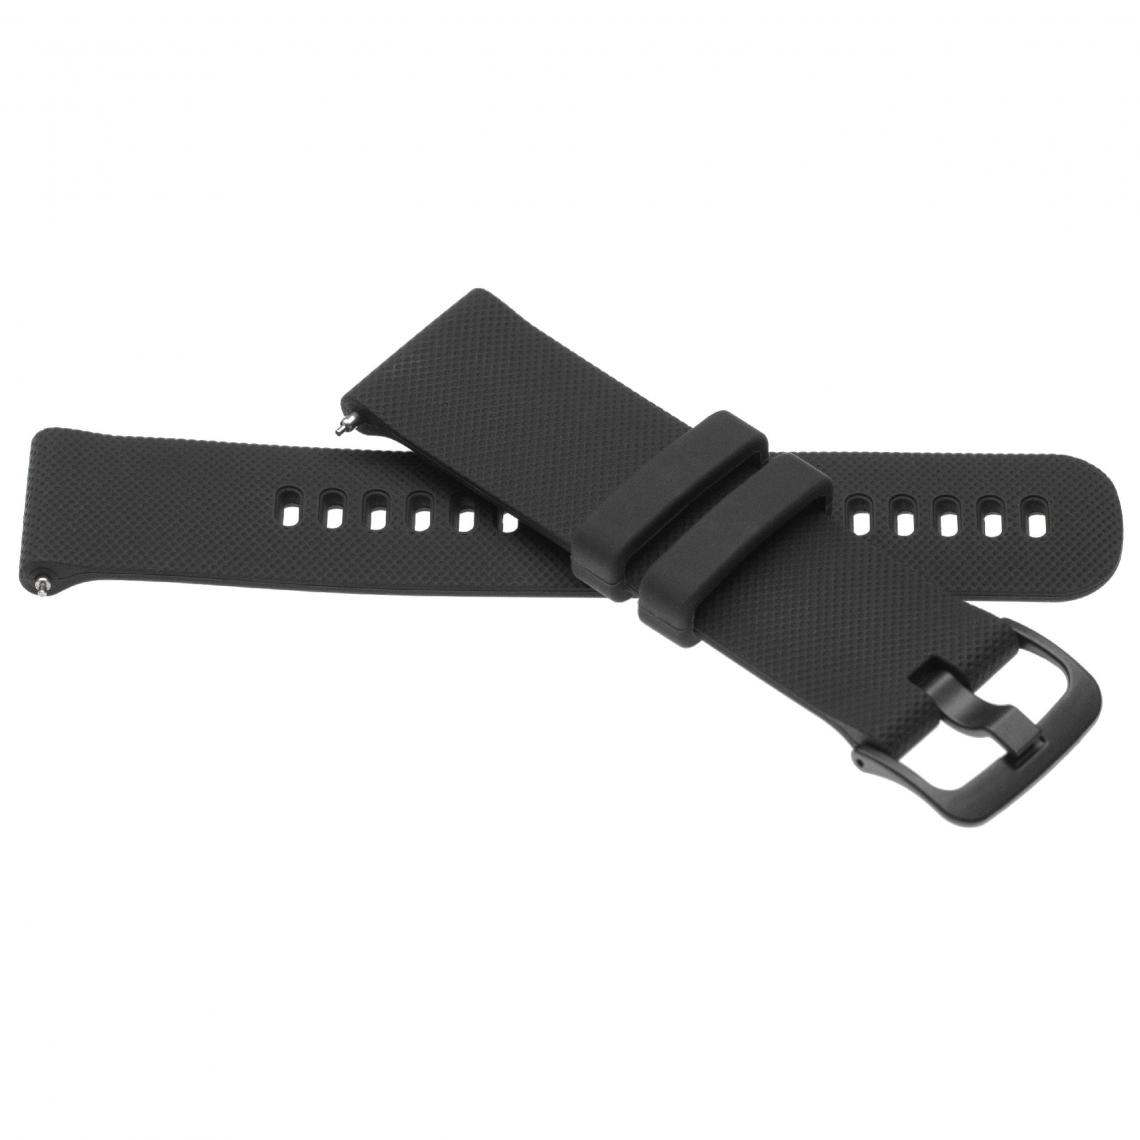 Vhbw - vhbw bracelet compatible avec Garmin Vivoactive 4 montre connectée - 12,1 + 9,2 cm silicone noir - Accessoires montres connectées